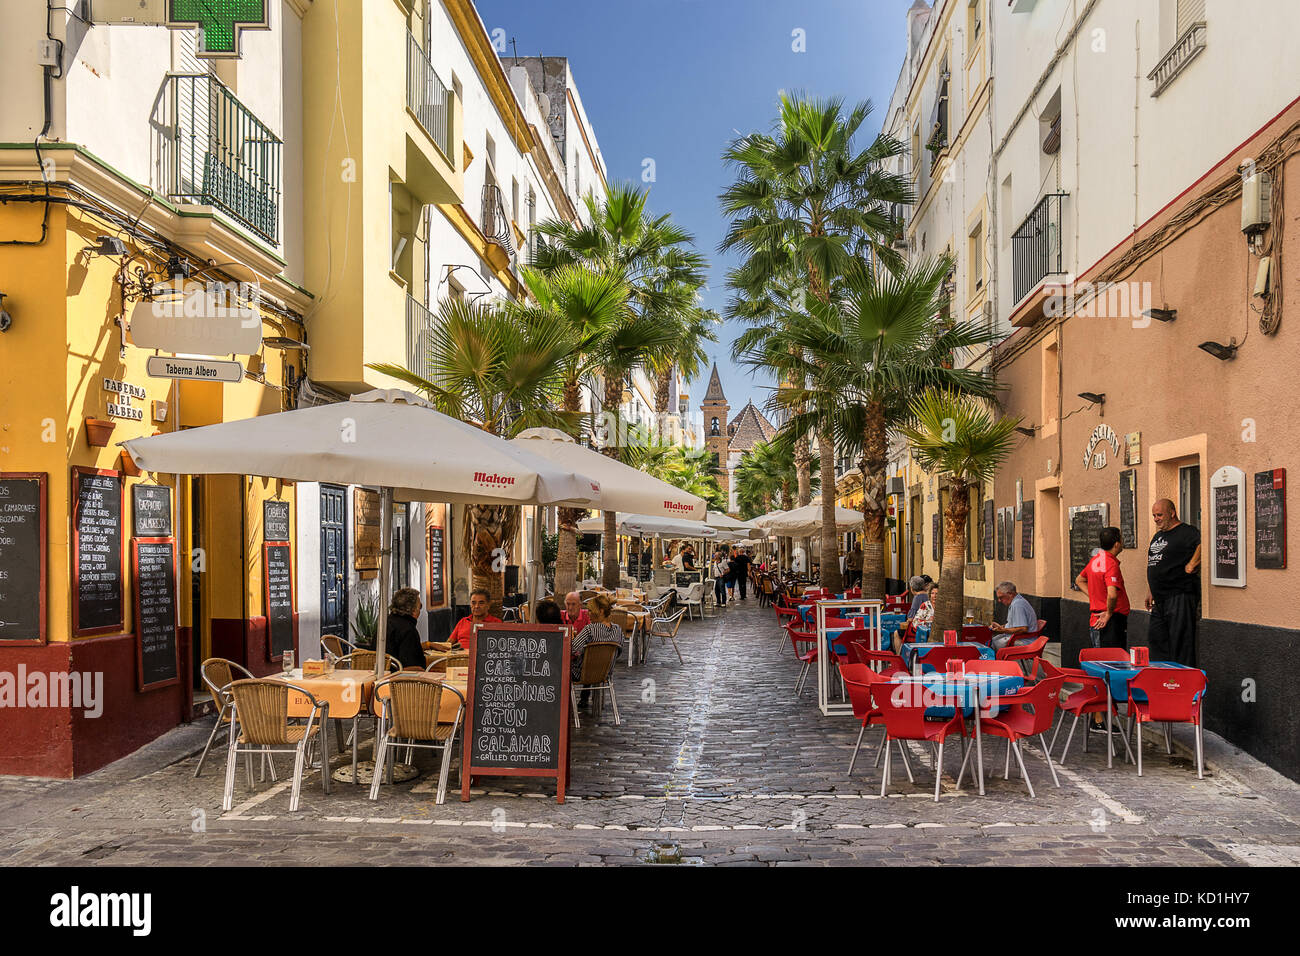 Colourful street scene in Cadiz Spain Stock Photo